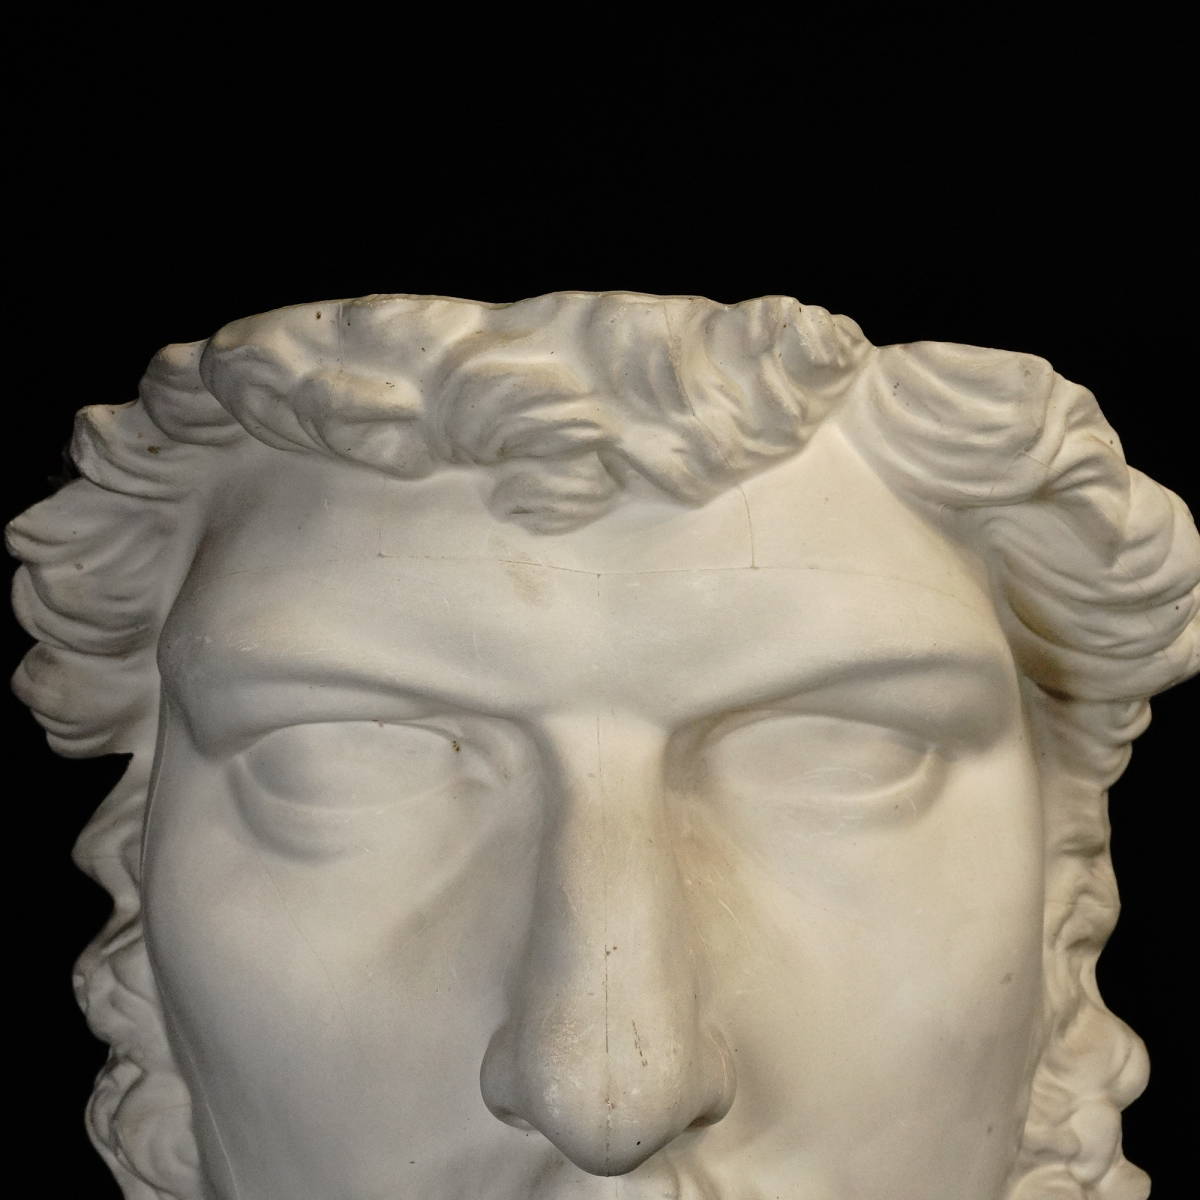 ビンテージ 石膏像 ルキウス・ウェルス像 ローマ帝国皇帝(在位 161